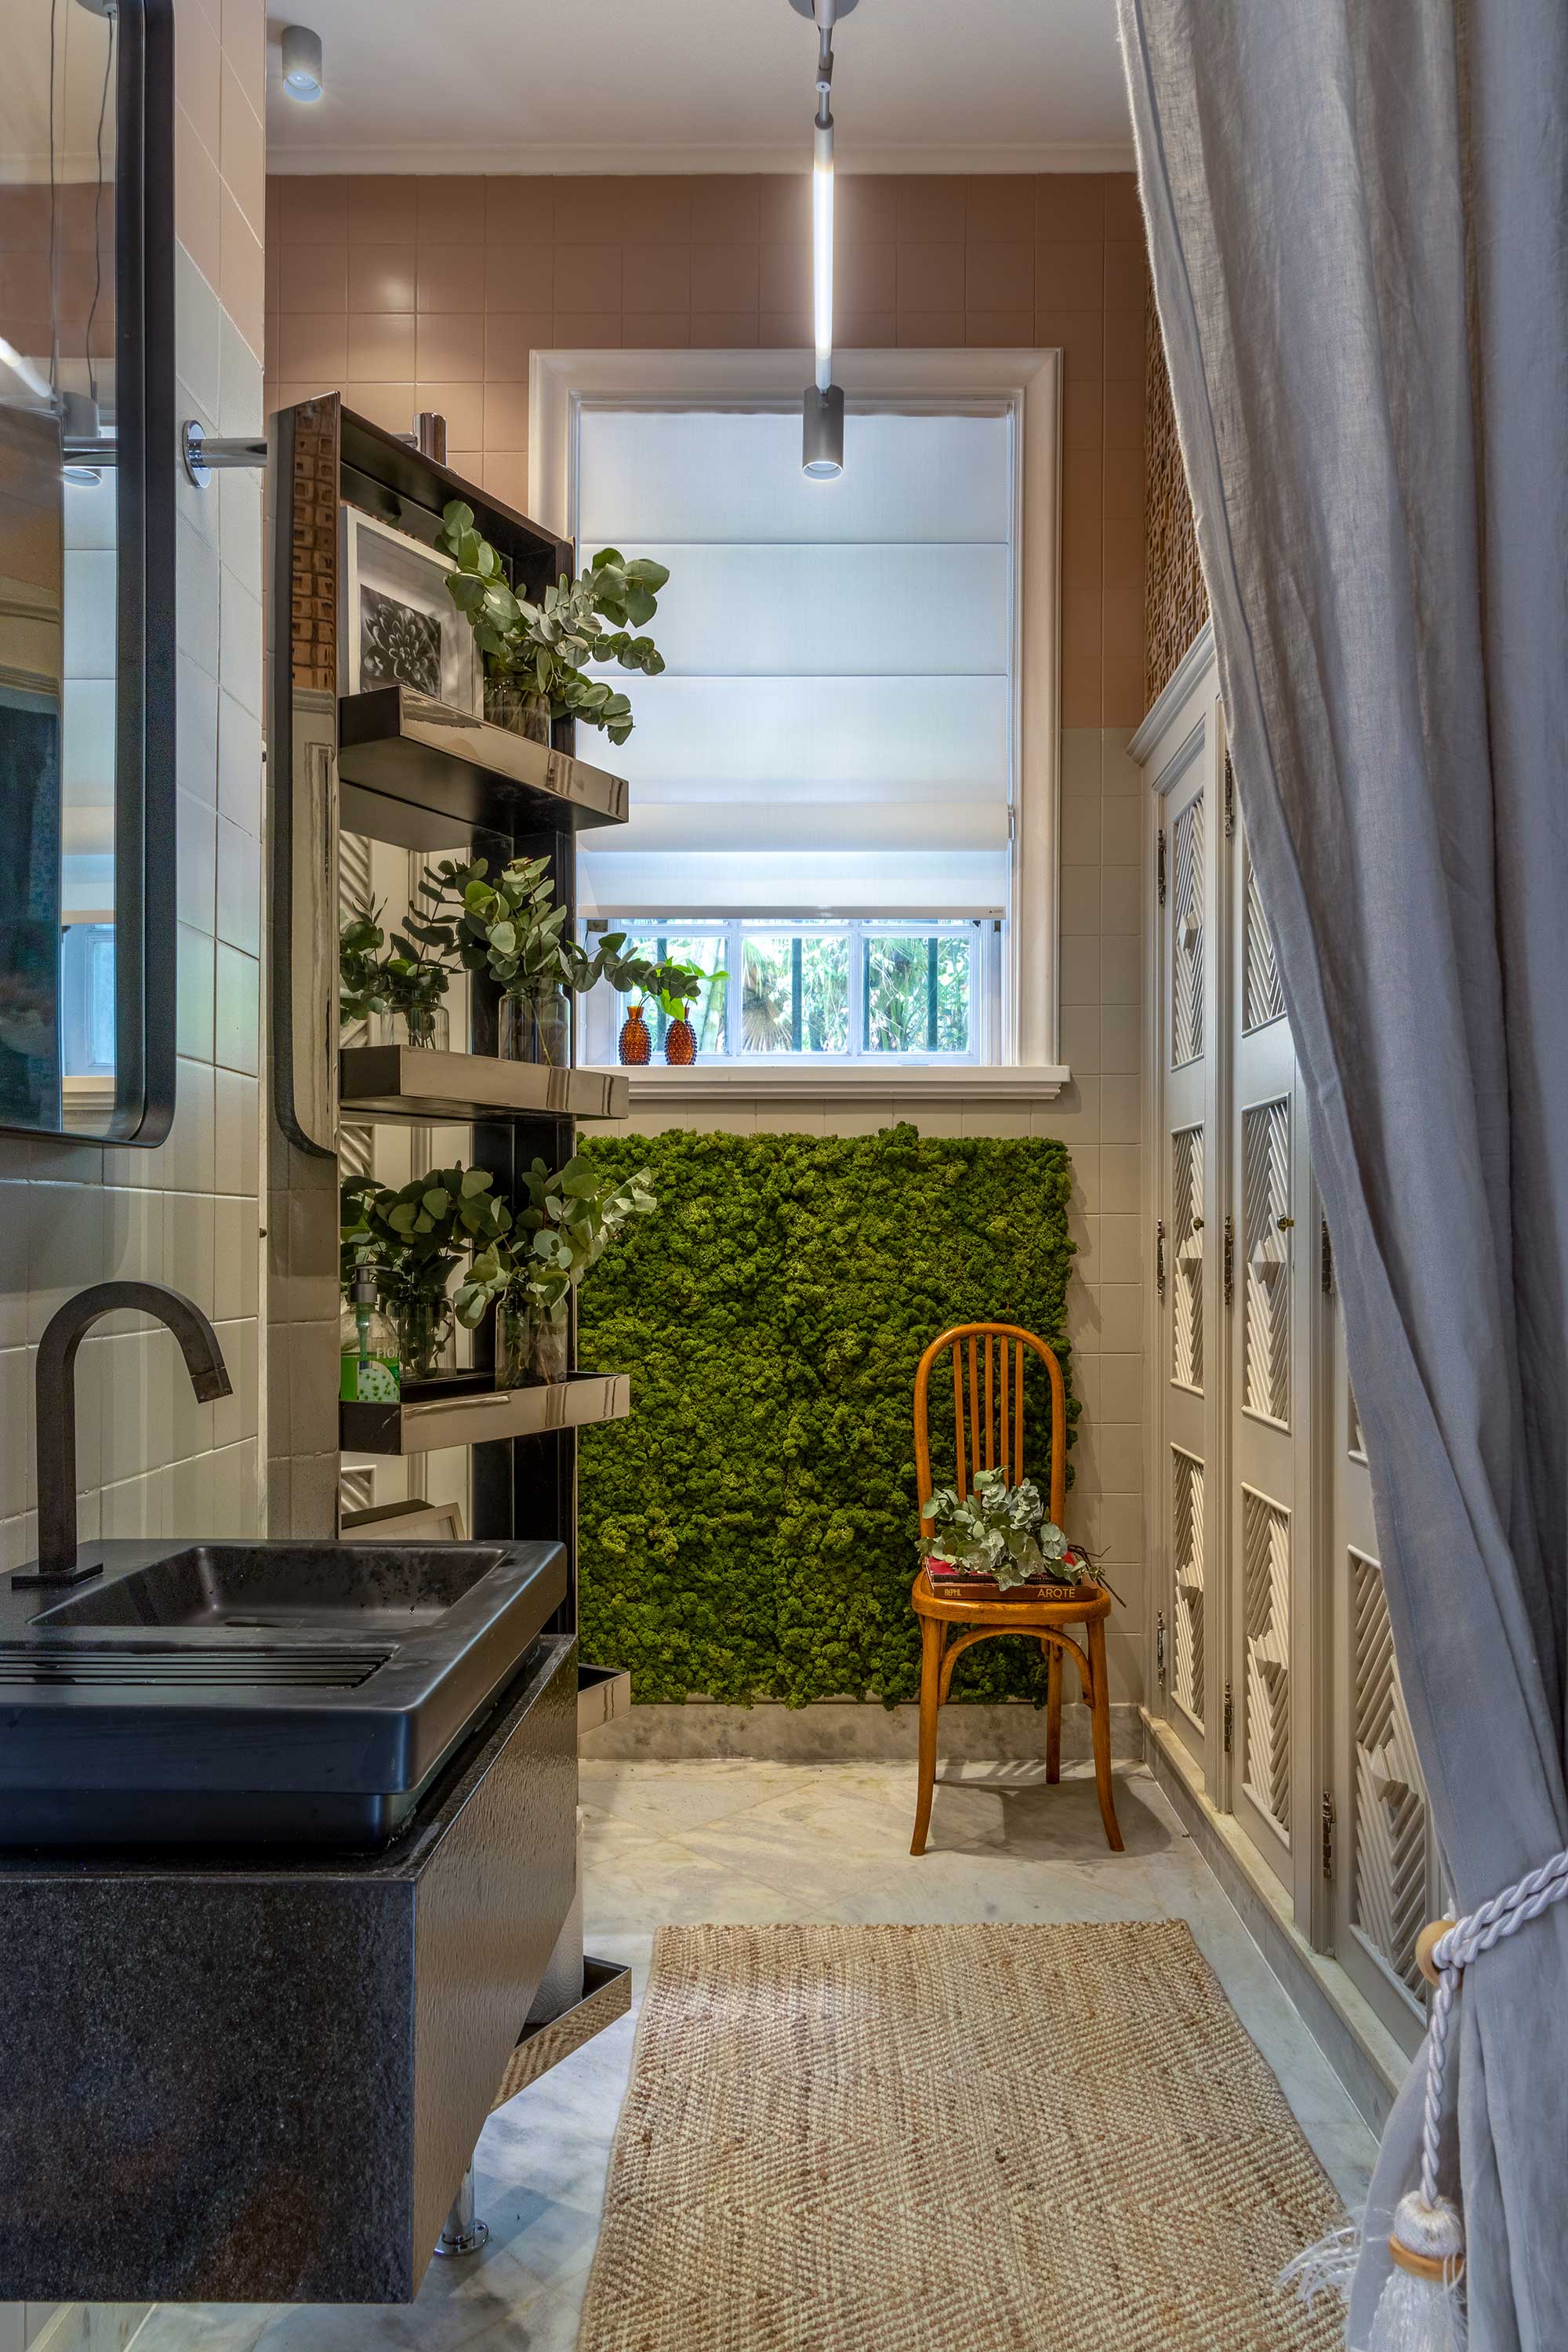 casacor rio de janeiro 2021 rj ambientes decoração arquitetura mostras anna malta andrea duarte cozinha amigos